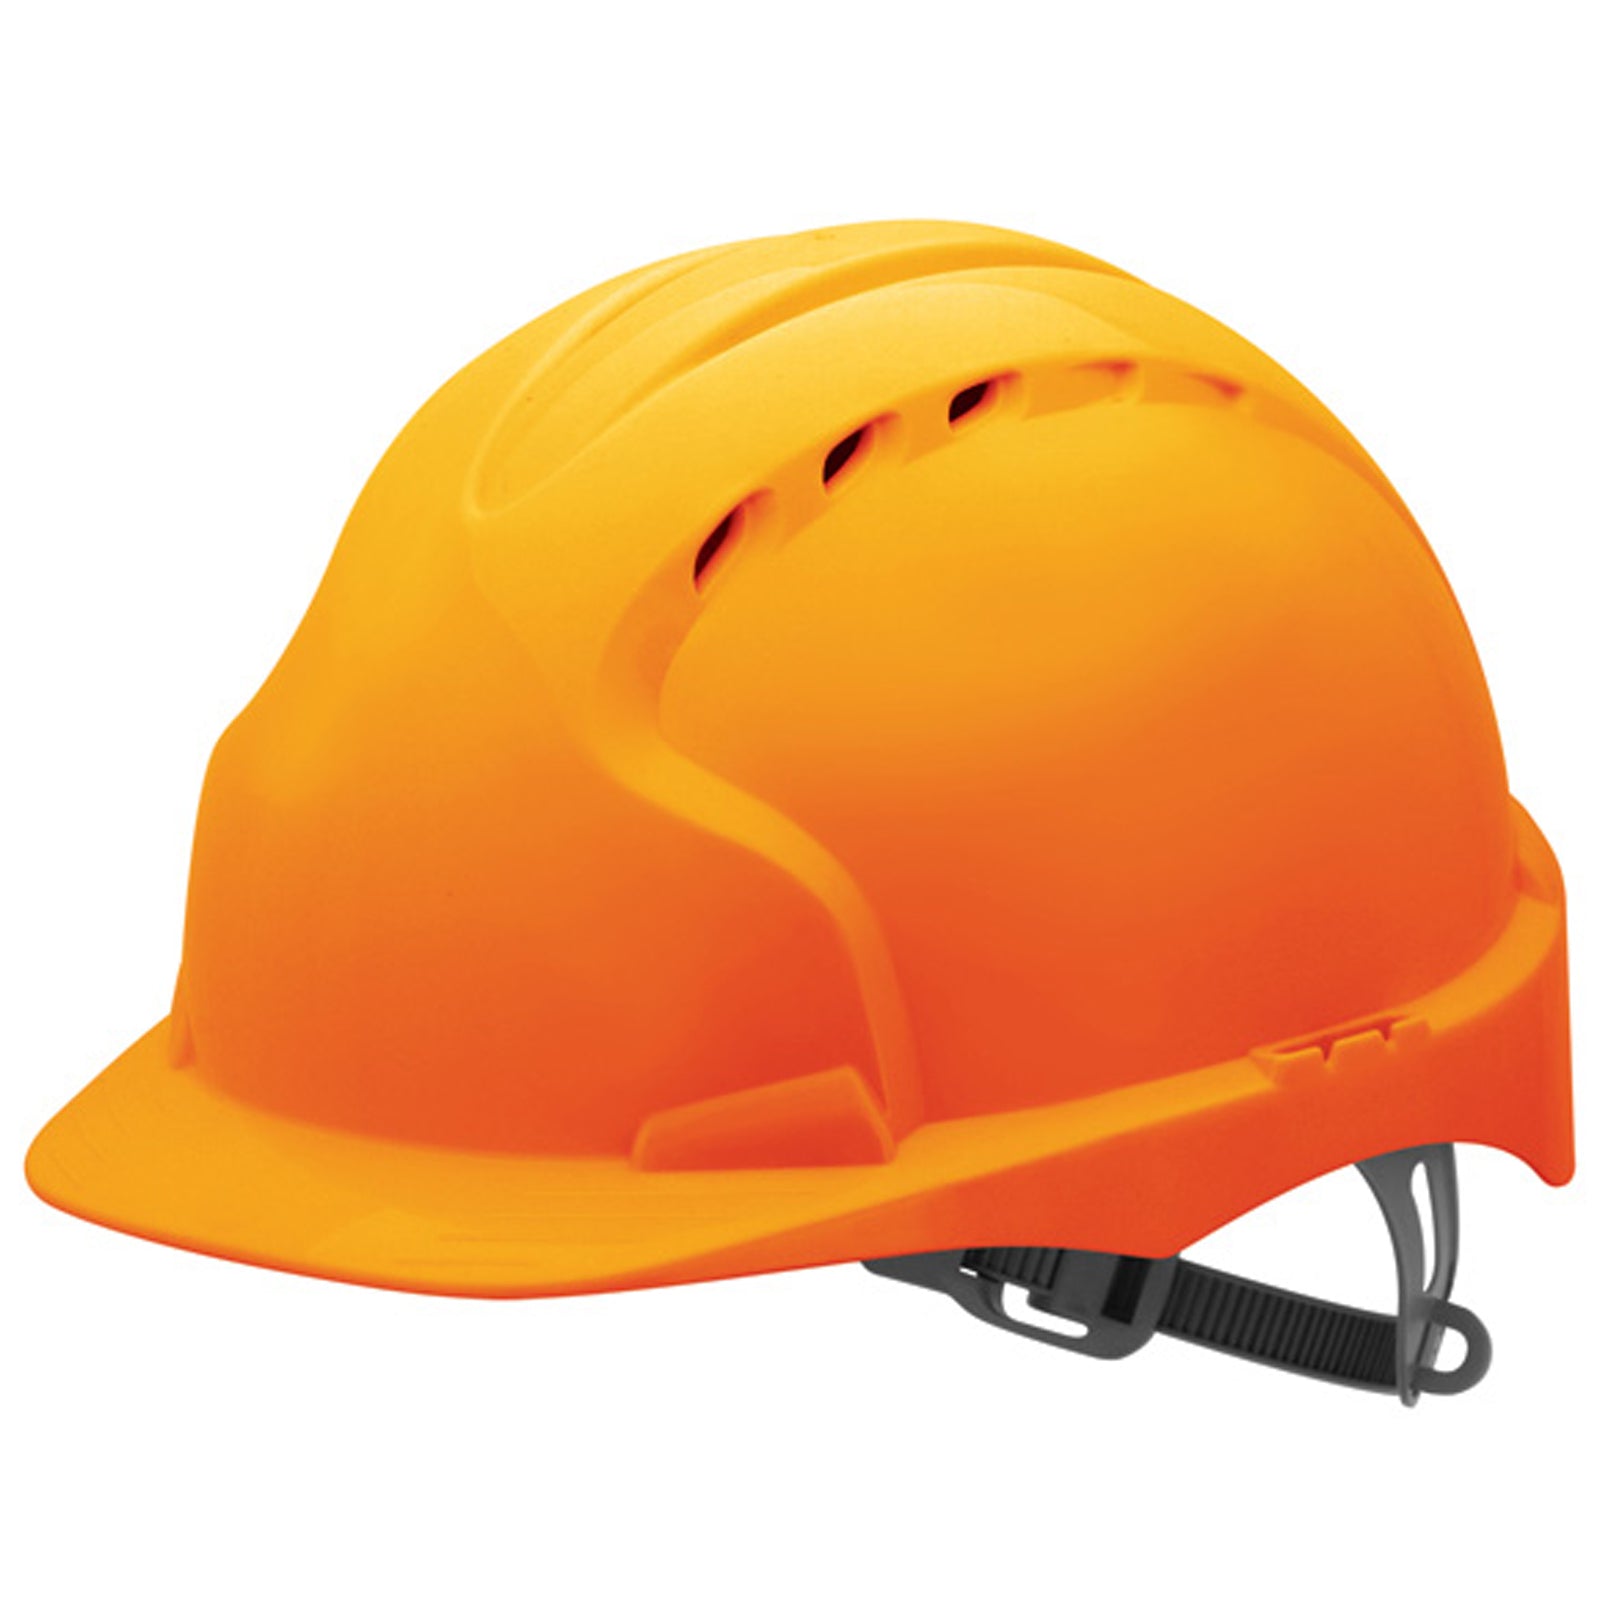 JSP Evo 2 Vented Safety Helmet with Slip Ratchet